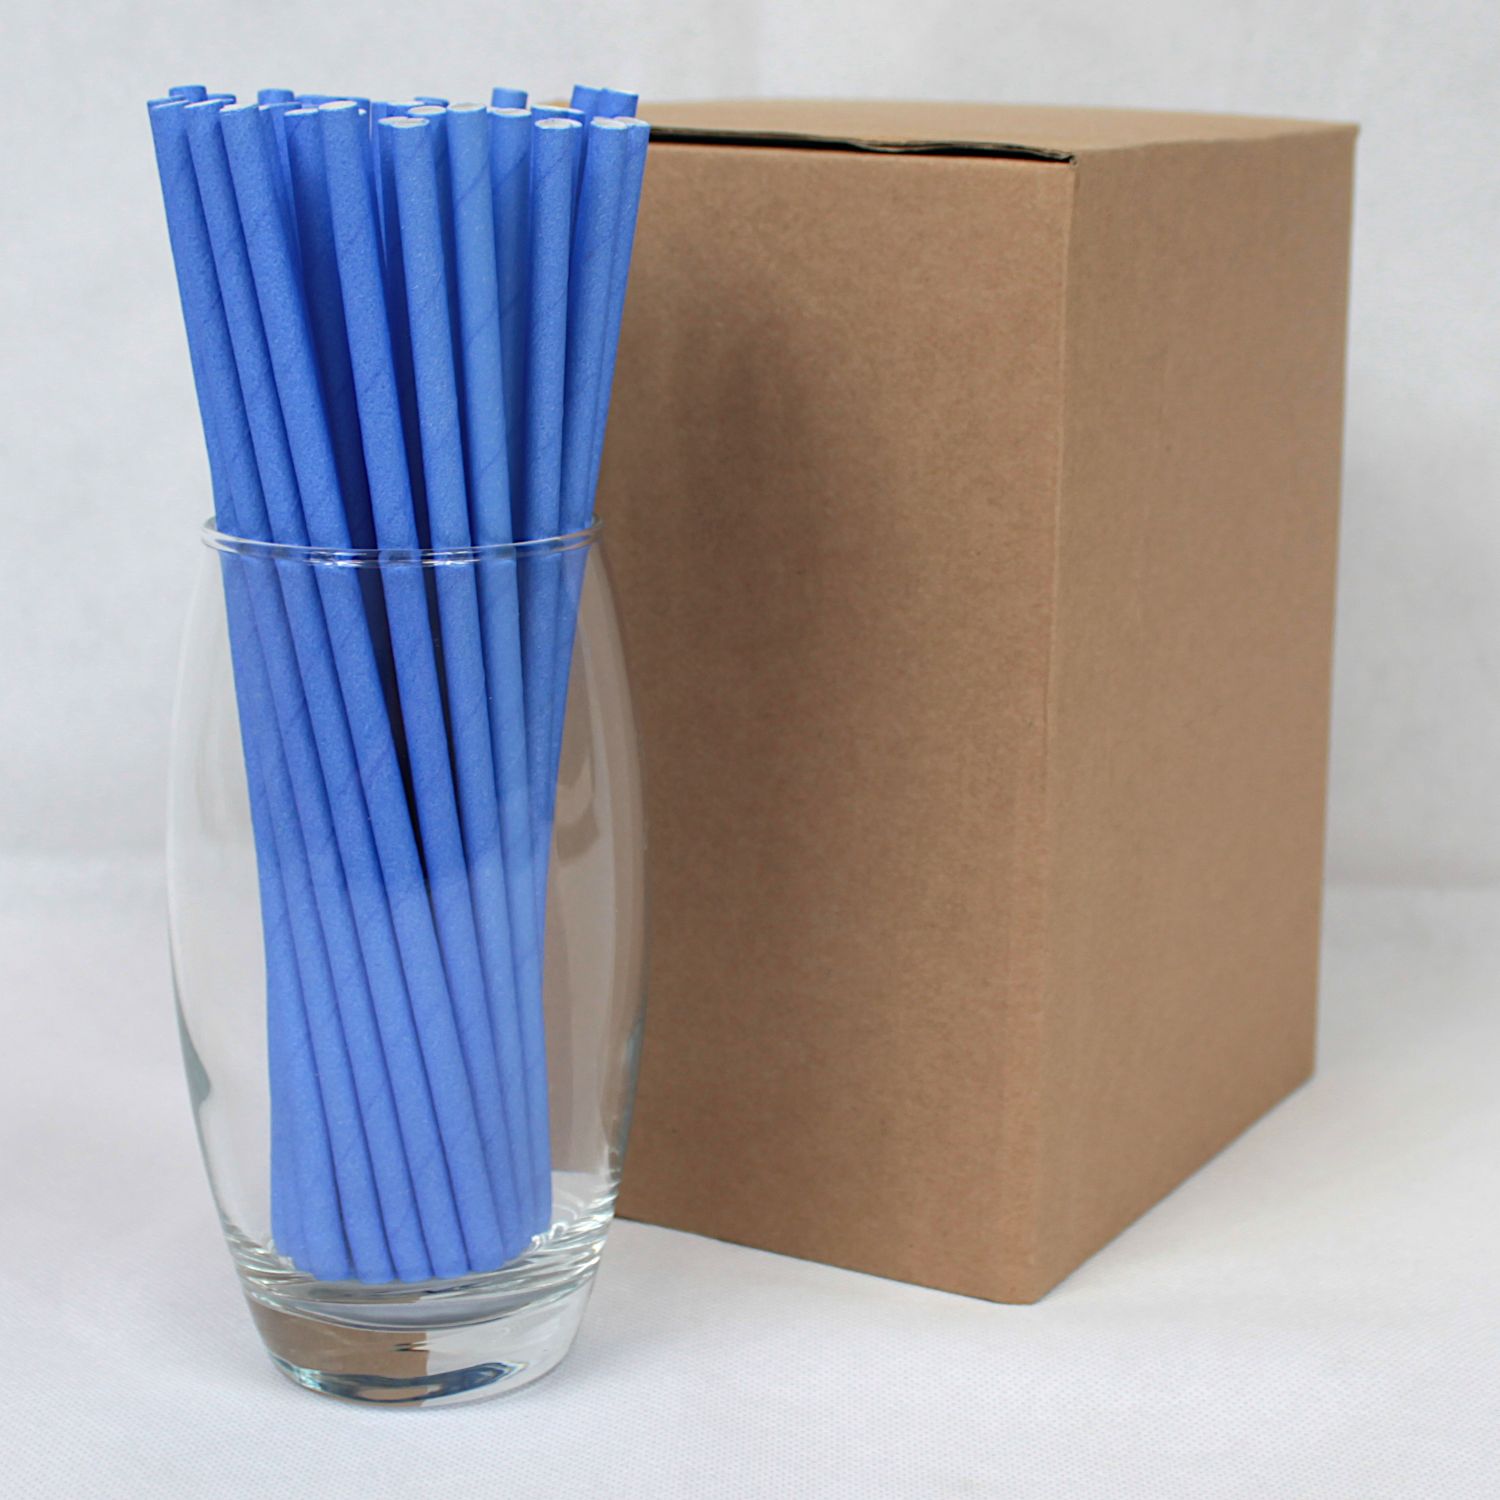 Blue Paper Straws (6mm x 200mm) - Intrinsic Paper Straws